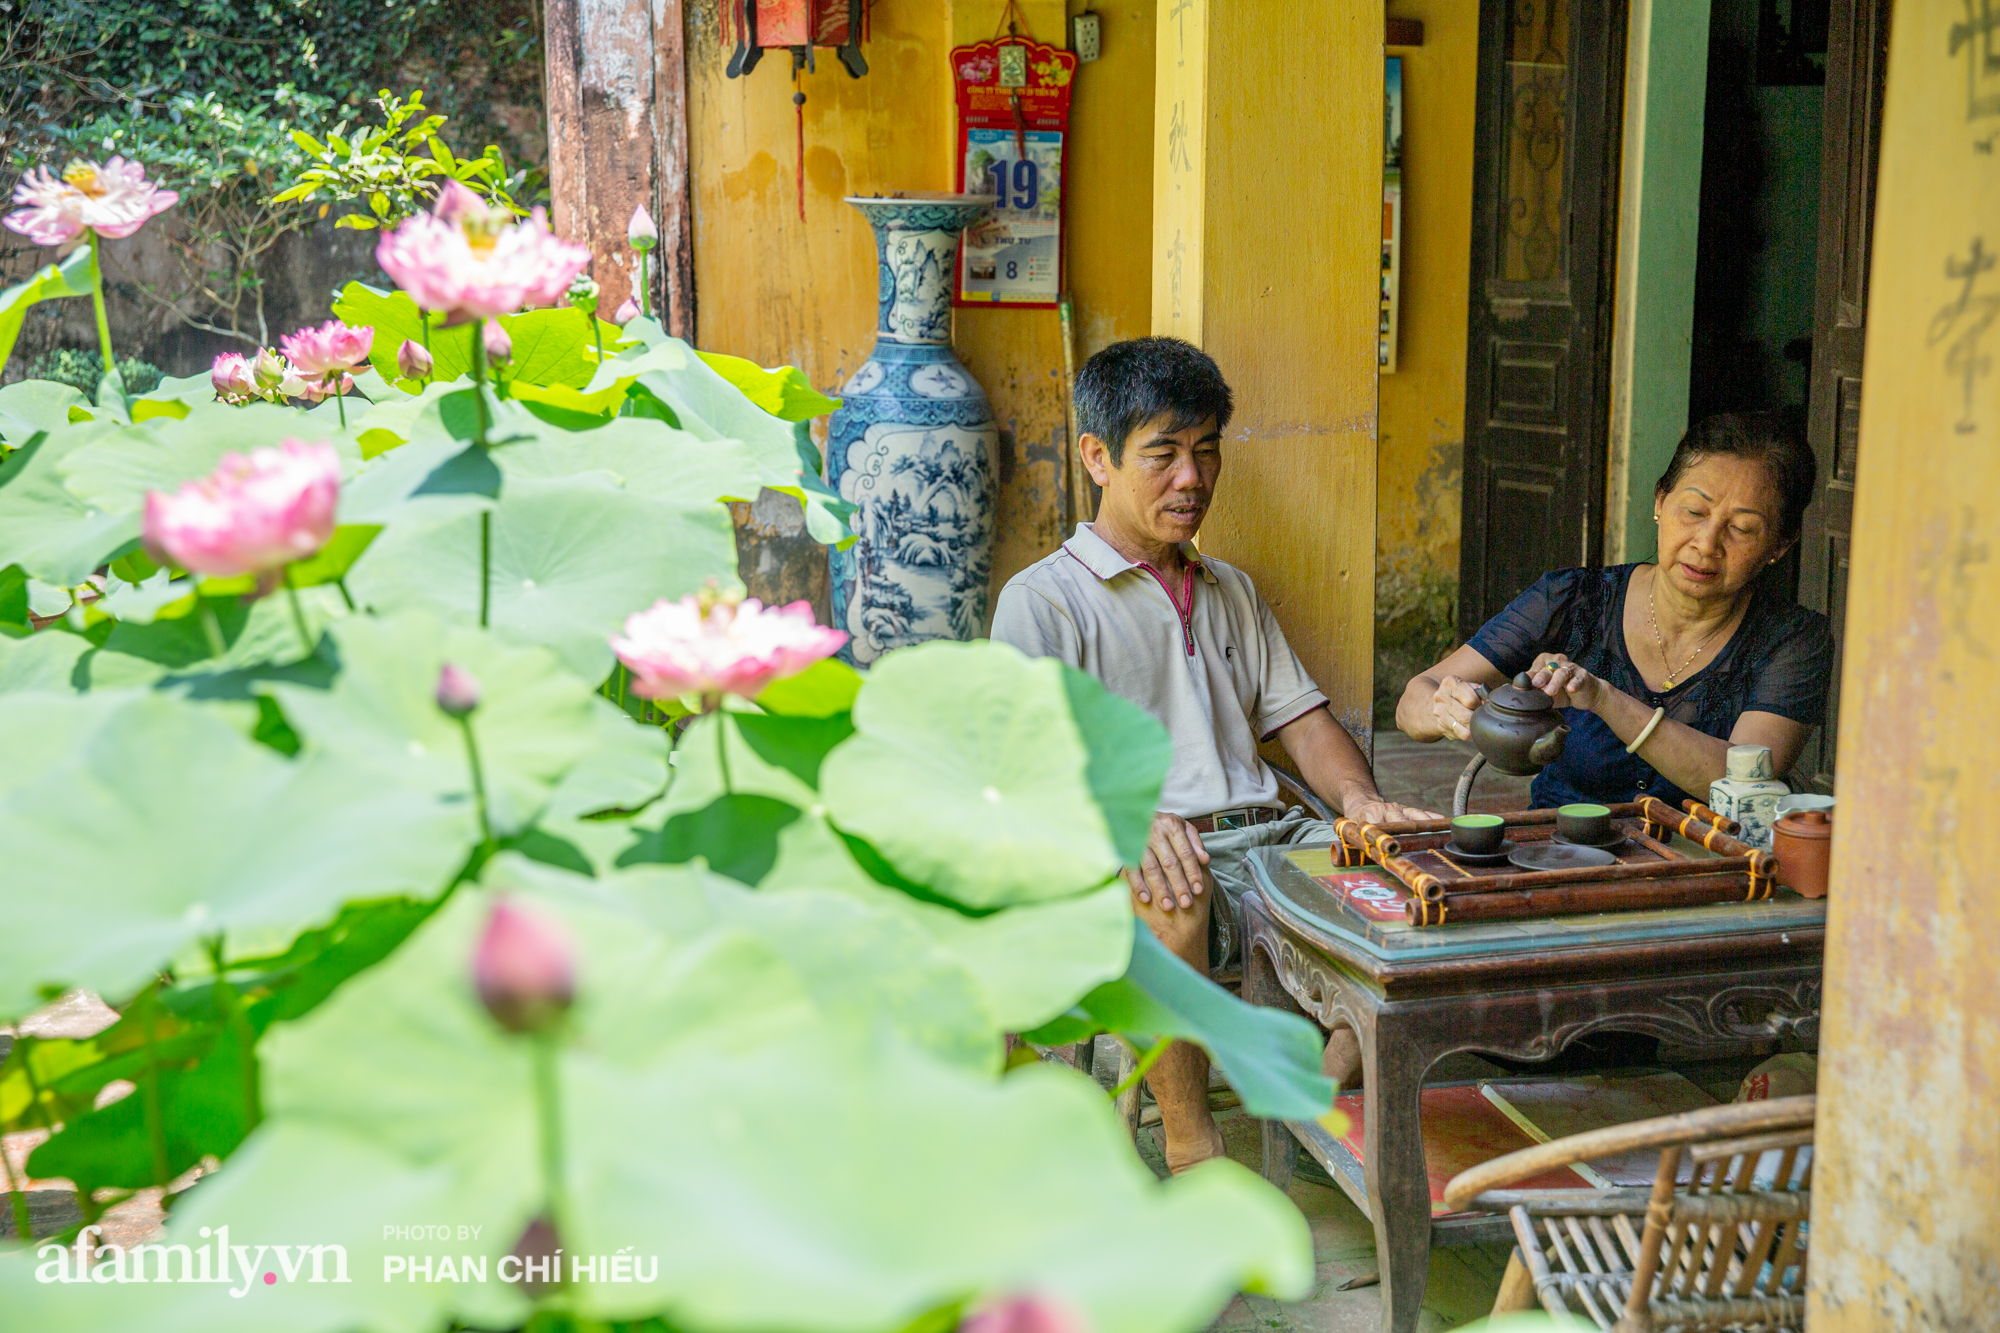 Đôi vợ chồng sở hữu căn nhà cổ 100 năm tuổi tại Hà Nội sưu tập và trồng hàng trăm gốc sen cung đình Huế quanh nhà khiến ai đi qua cũng phải trầm trồ - Ảnh 12.